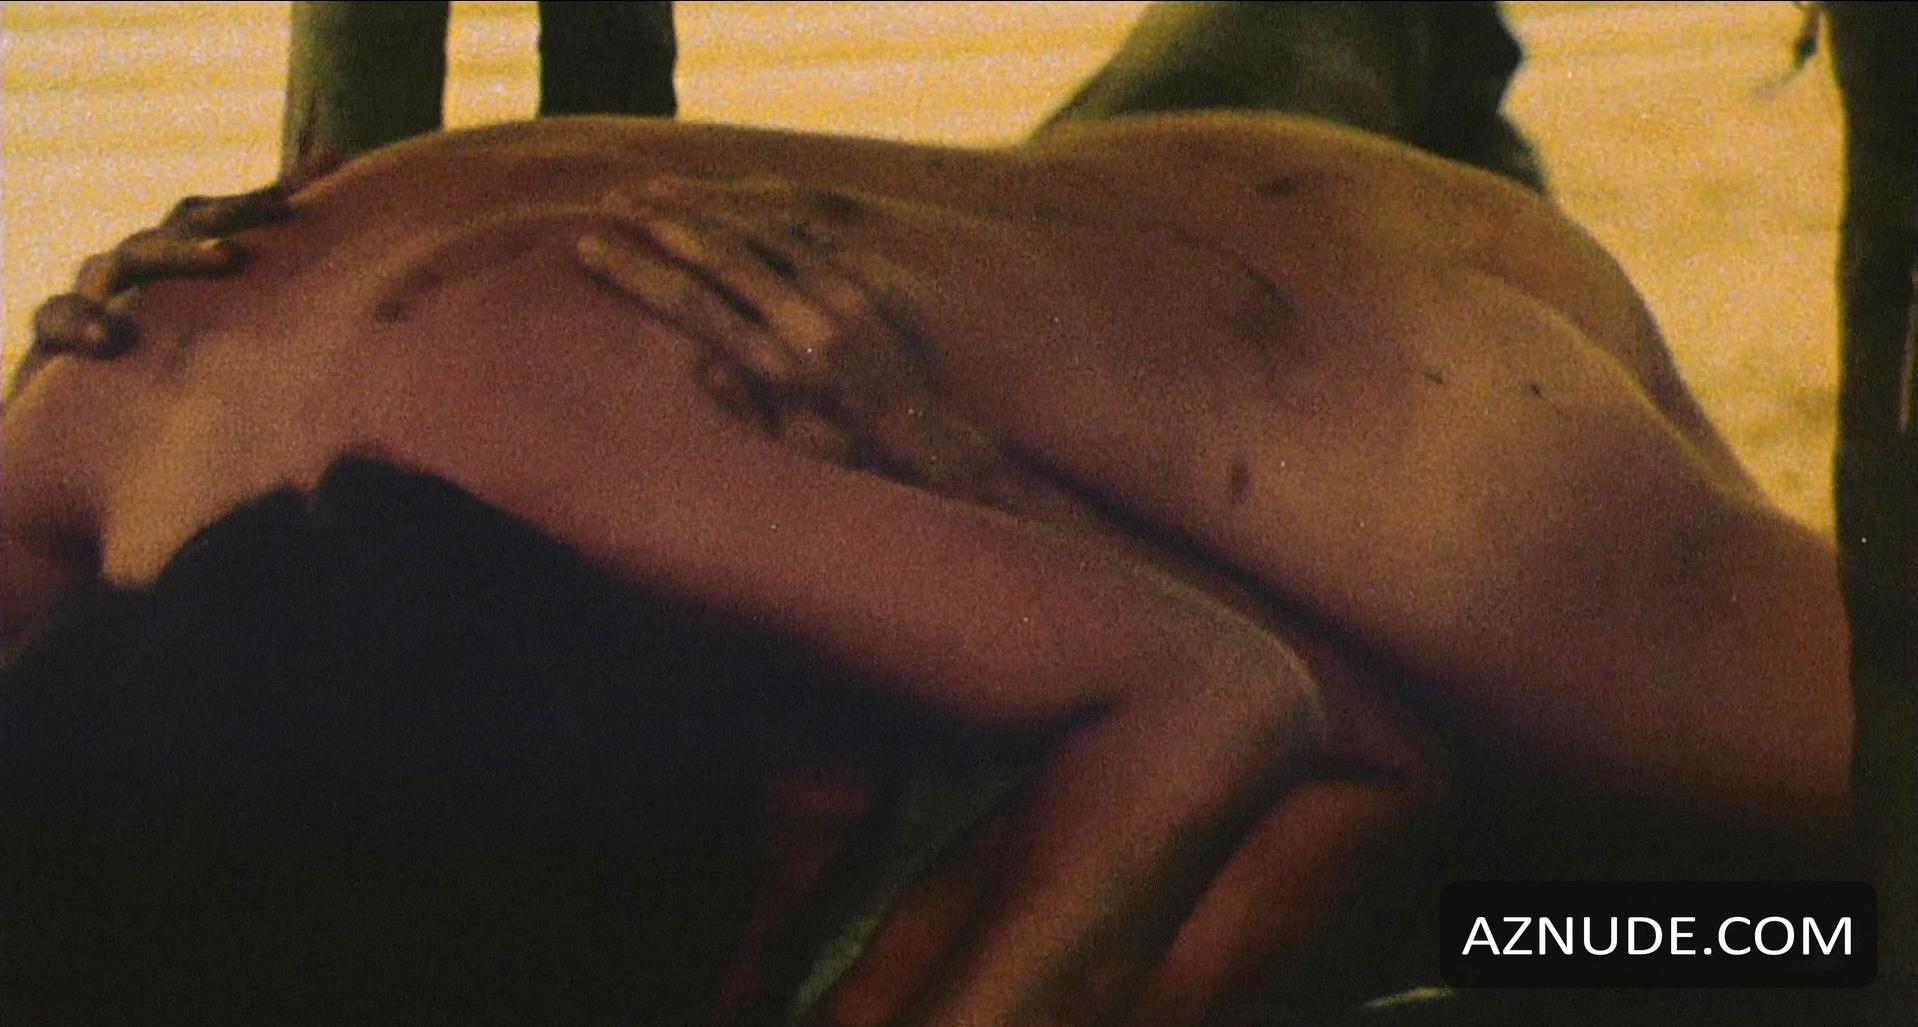 Alexandra Daddario Nude Deleted Scene The Best Porn Website